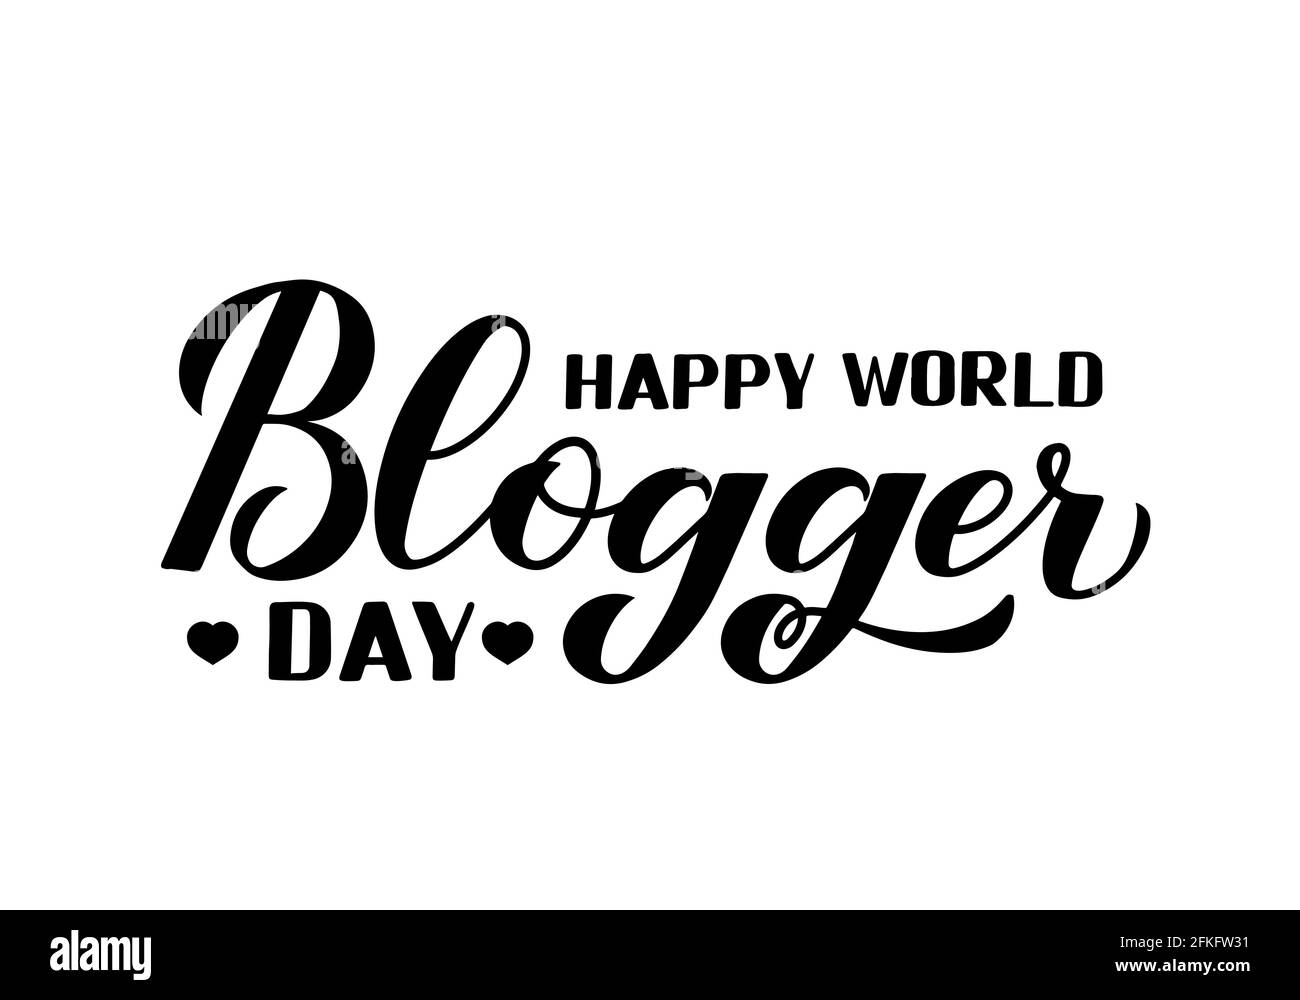 Happy World Blogger Day Kalligraphie Handschriftzug isoliert auf weiß. Urlaub in sozialen Medien. Einfach zu bearbeiten Vektor-Vorlage für Typografie Poster, Banner Stock Vektor